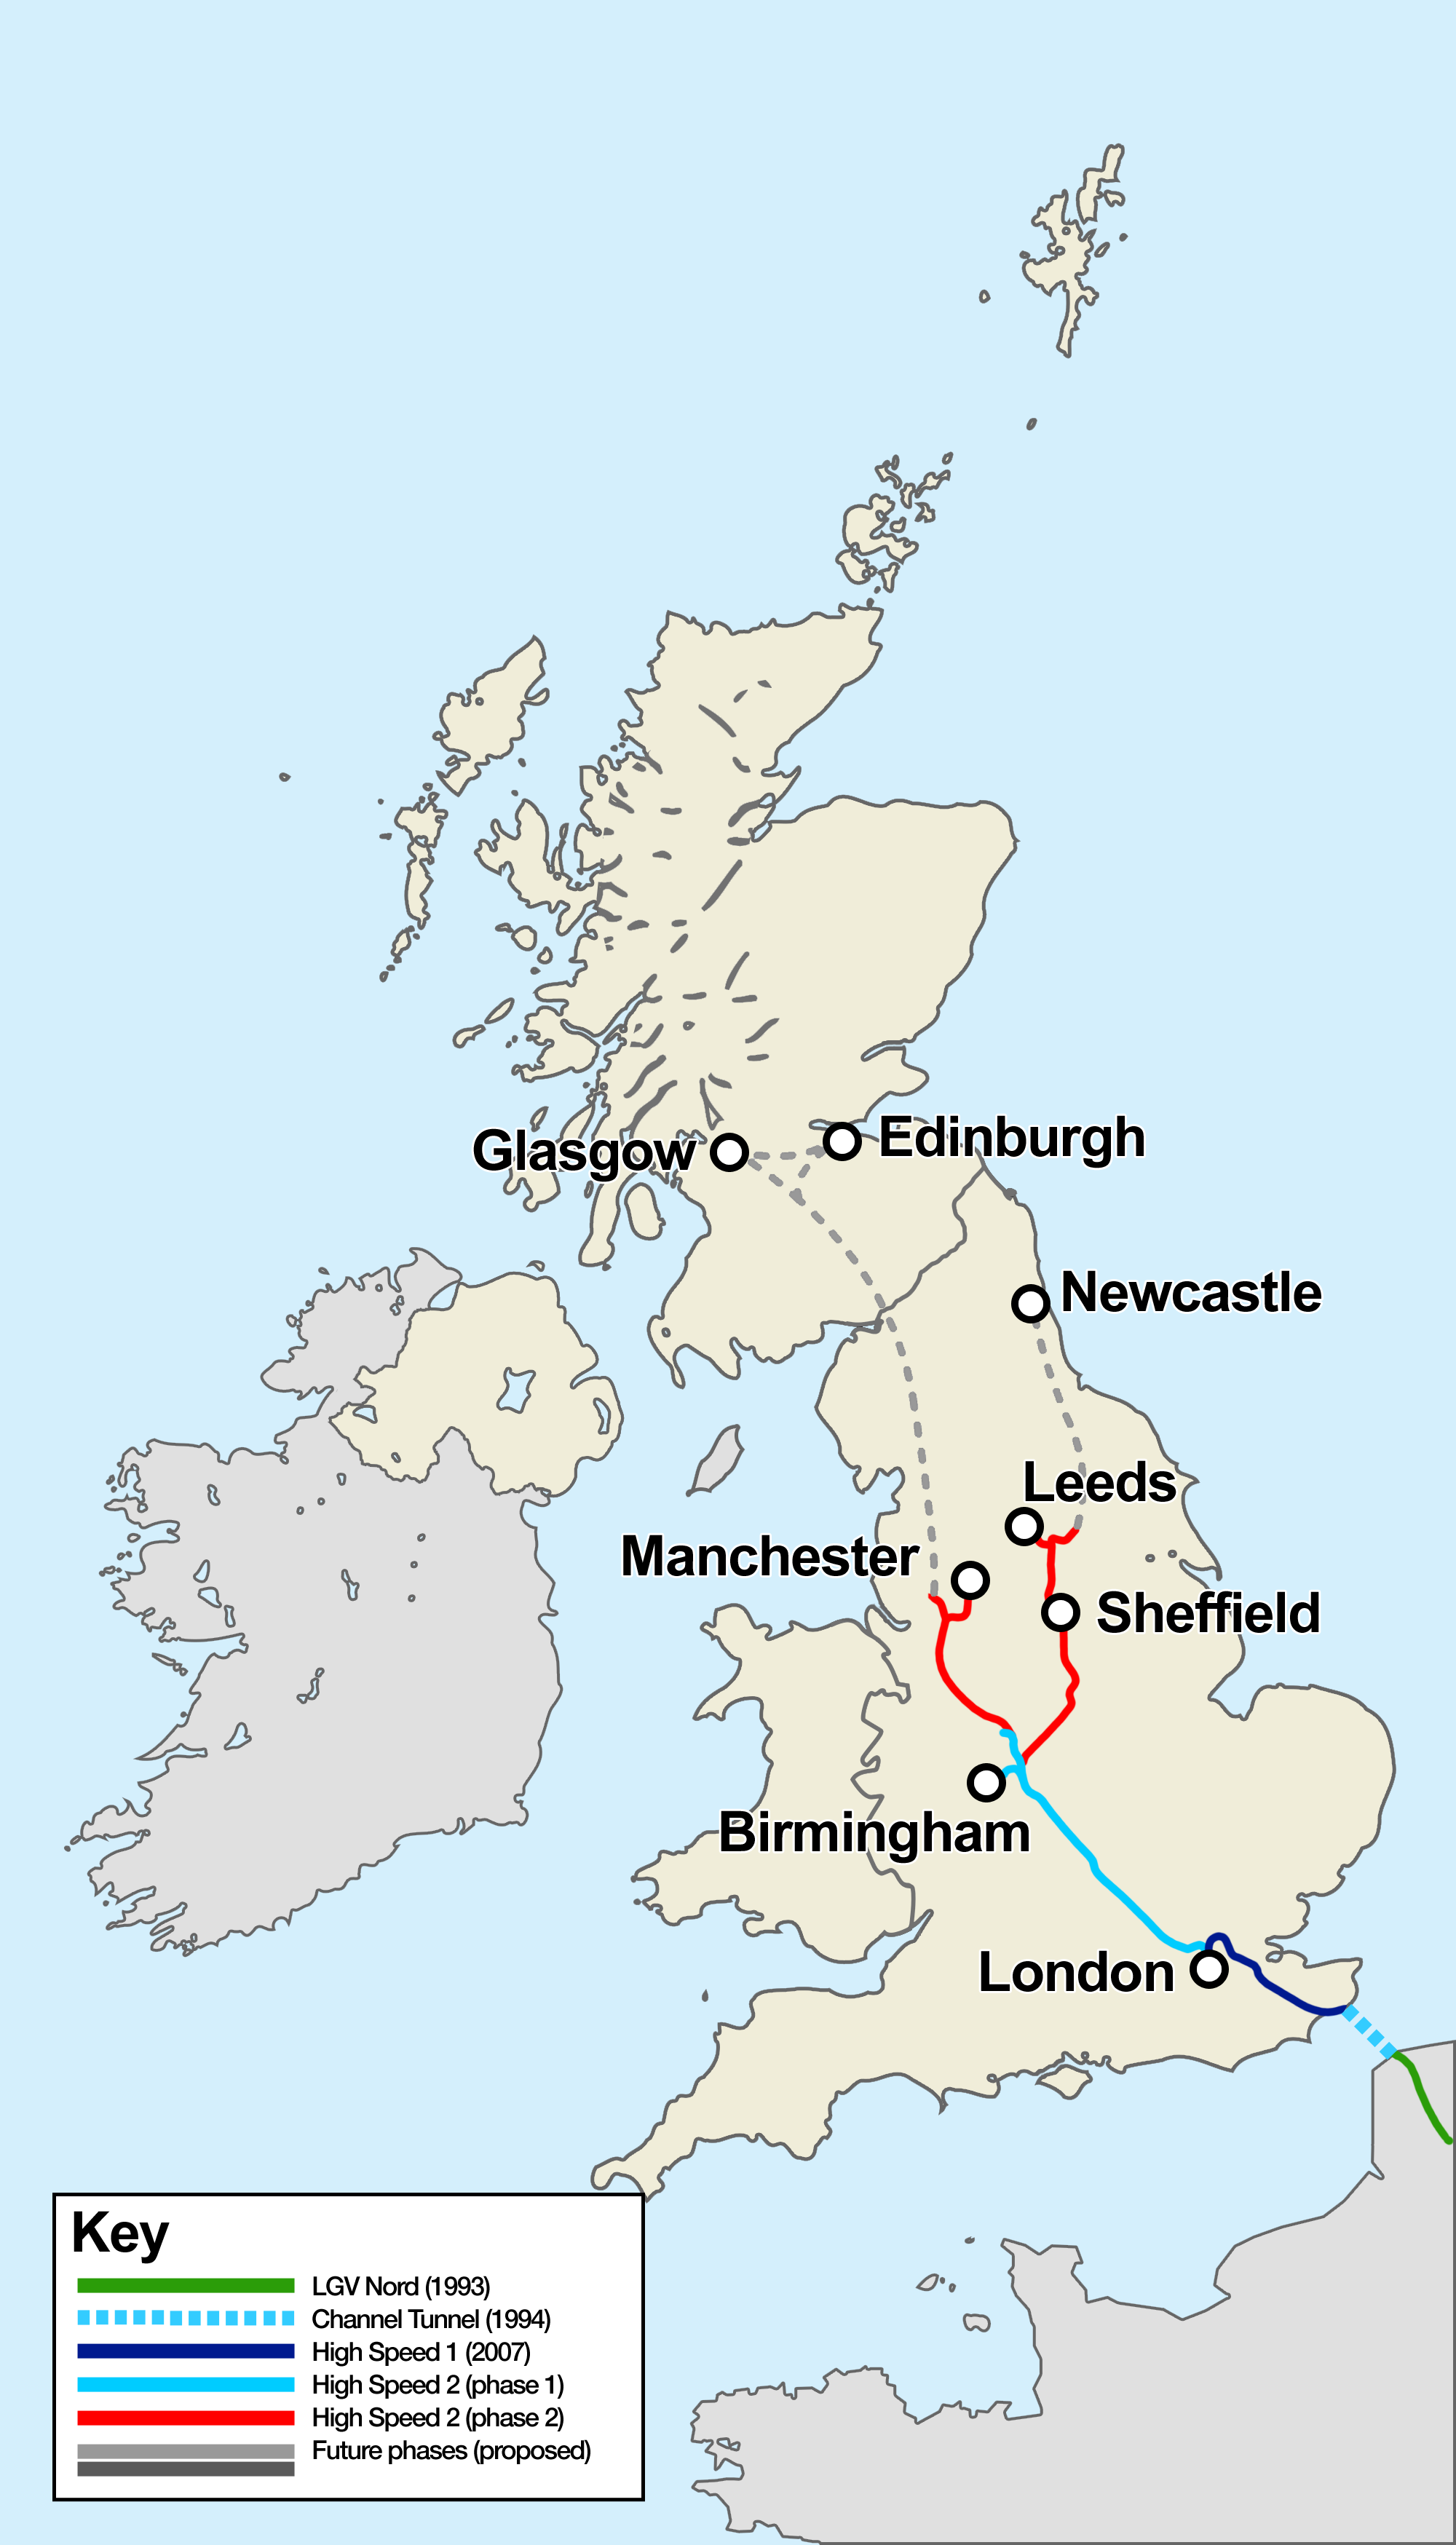 La 'Y' británica pretende unir el Gran Londres con las ciudades de Leeds y Manchester.